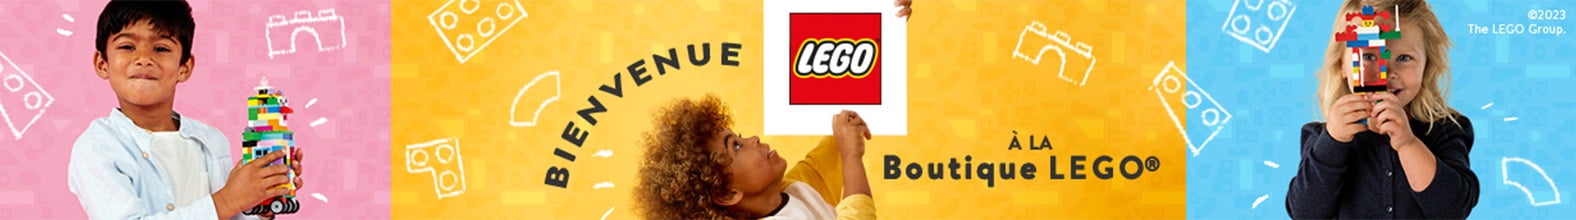 Bienvenue à la boutique LEGO